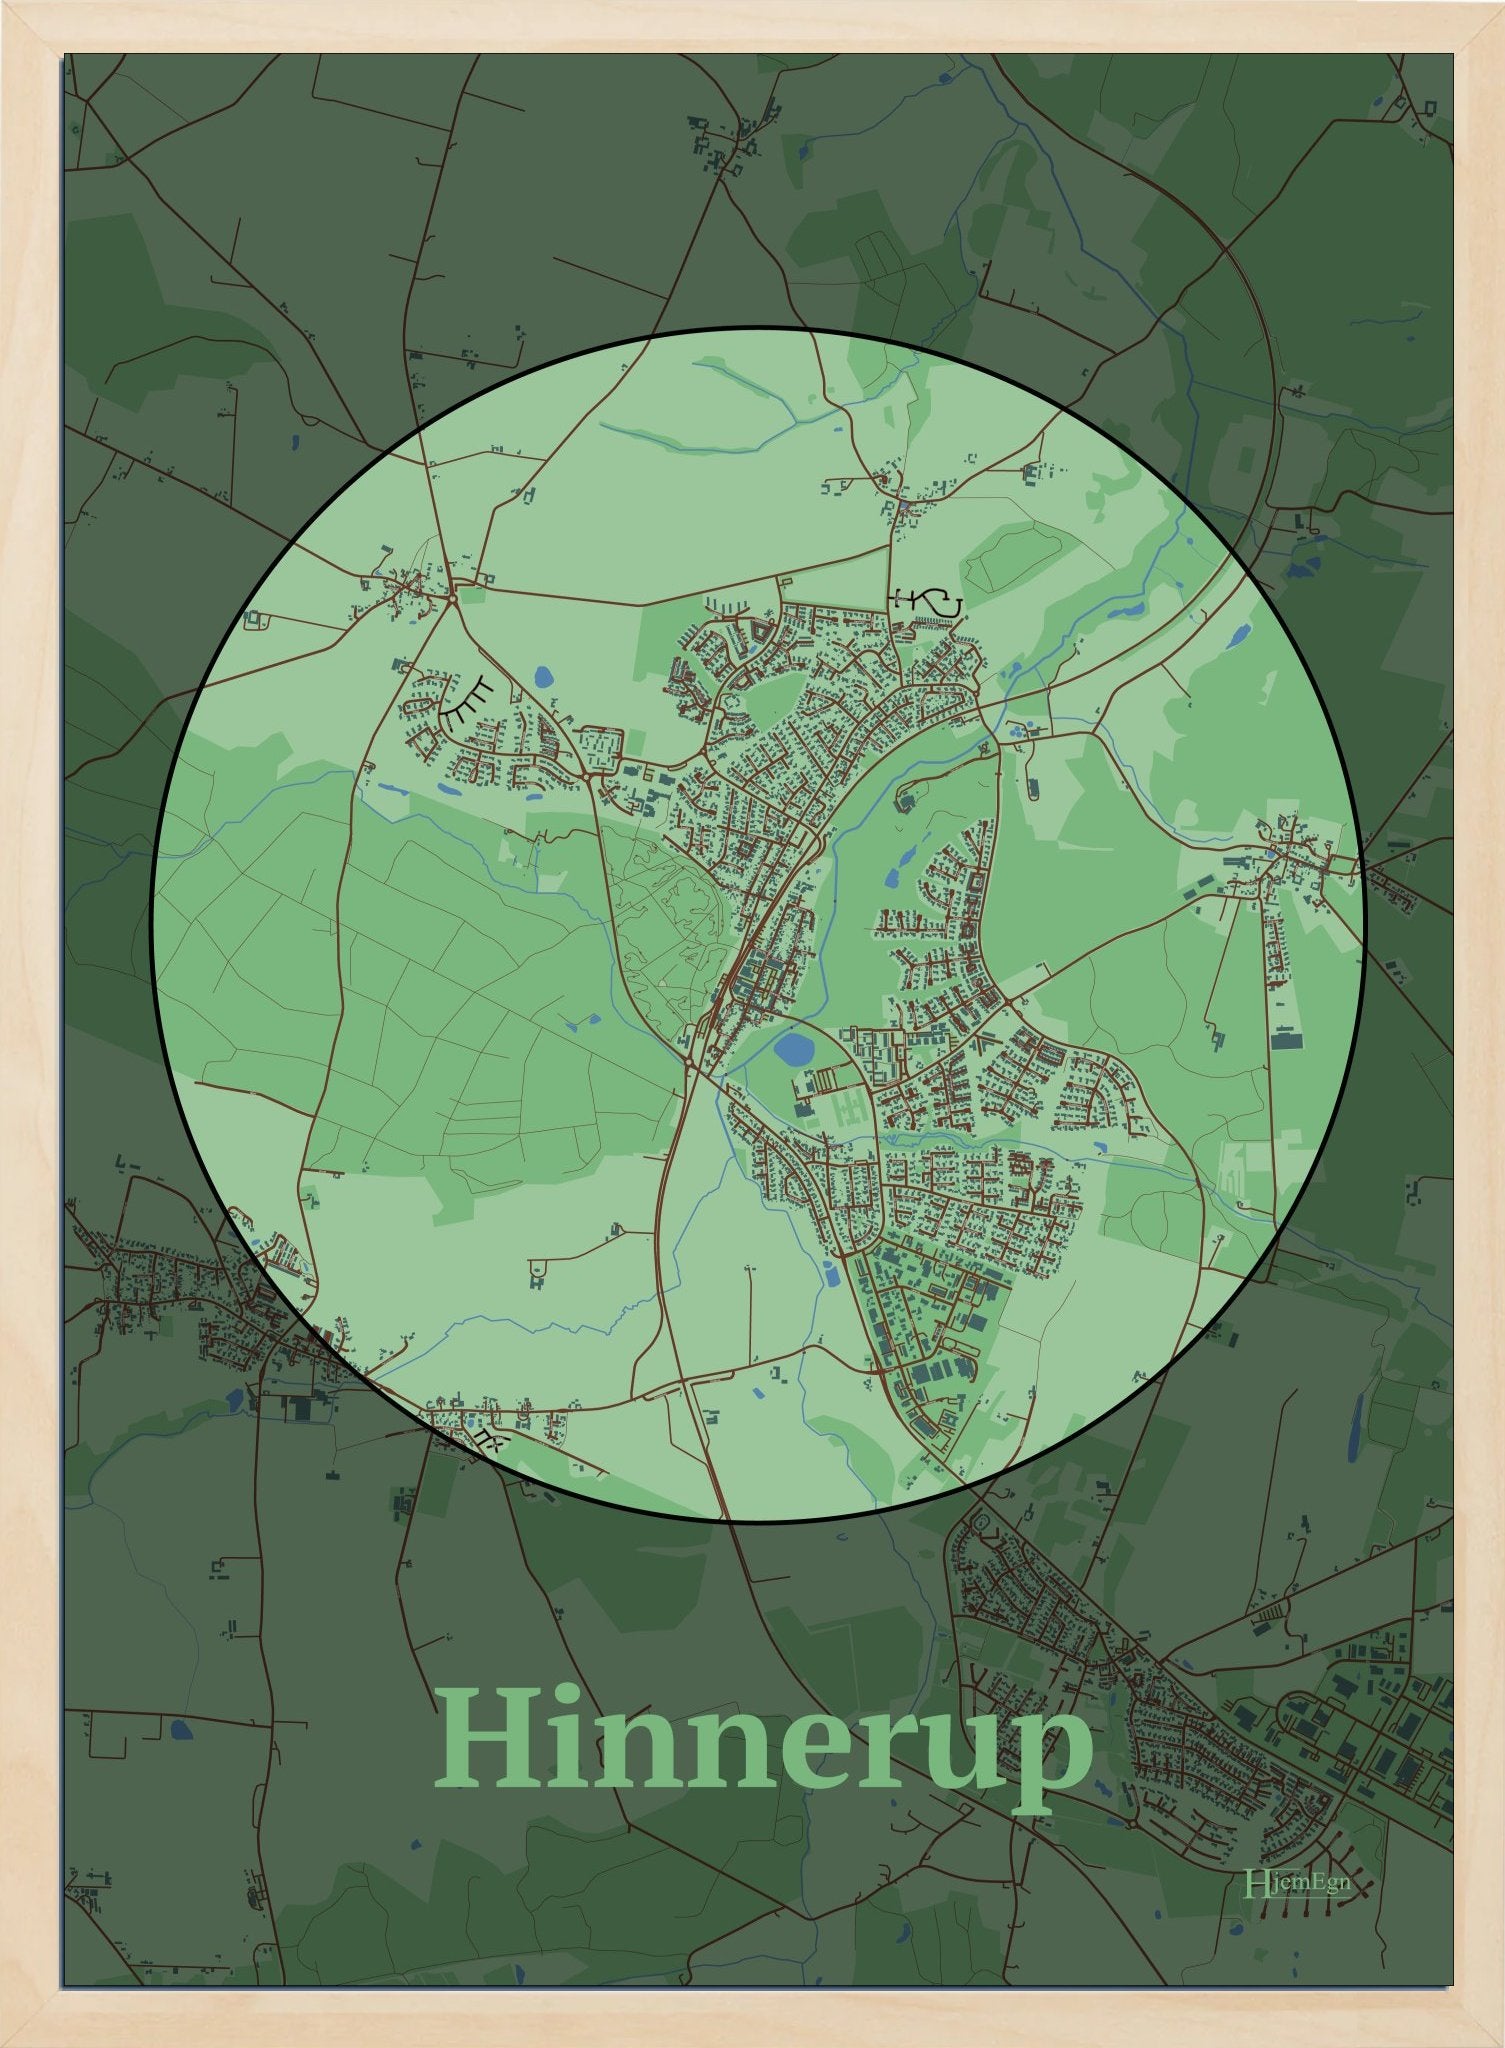 Hinnerup plakat i farve pastel grøn og HjemEgn.dk design centrum. Design bykort for Hinnerup